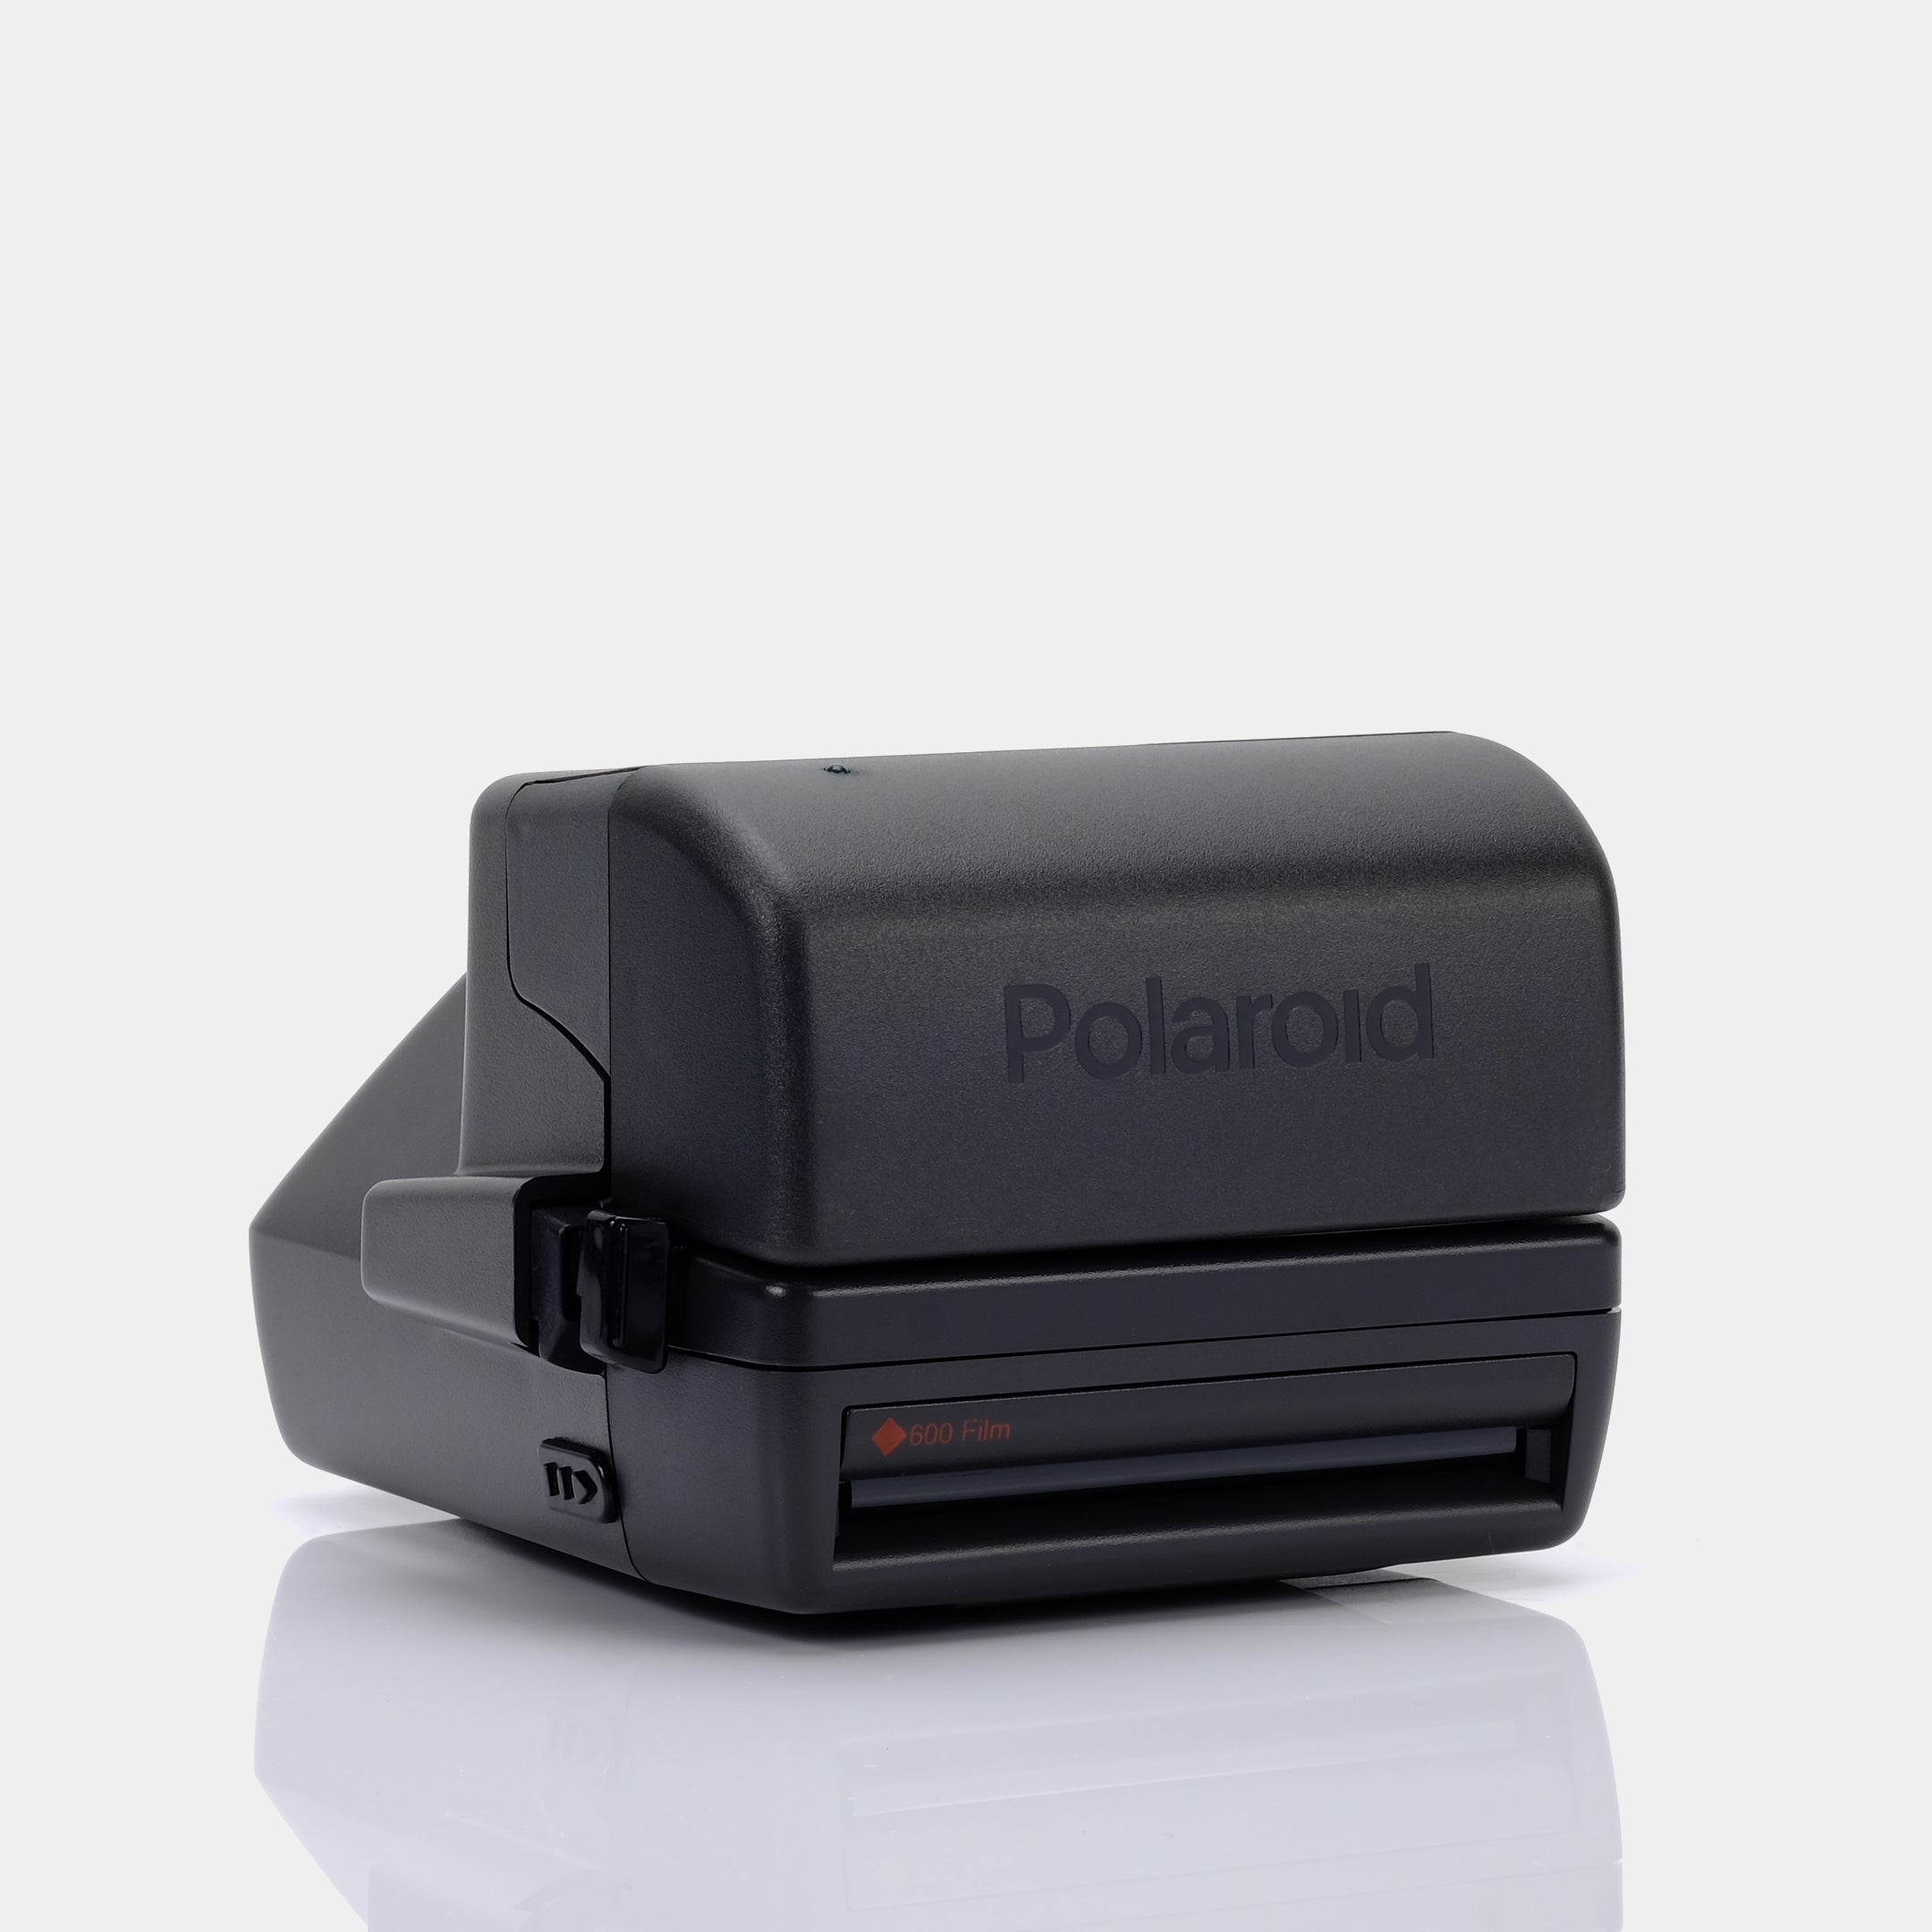 Polaroid 600 Autofocus 636 Pink and Grey Instant Film Camera